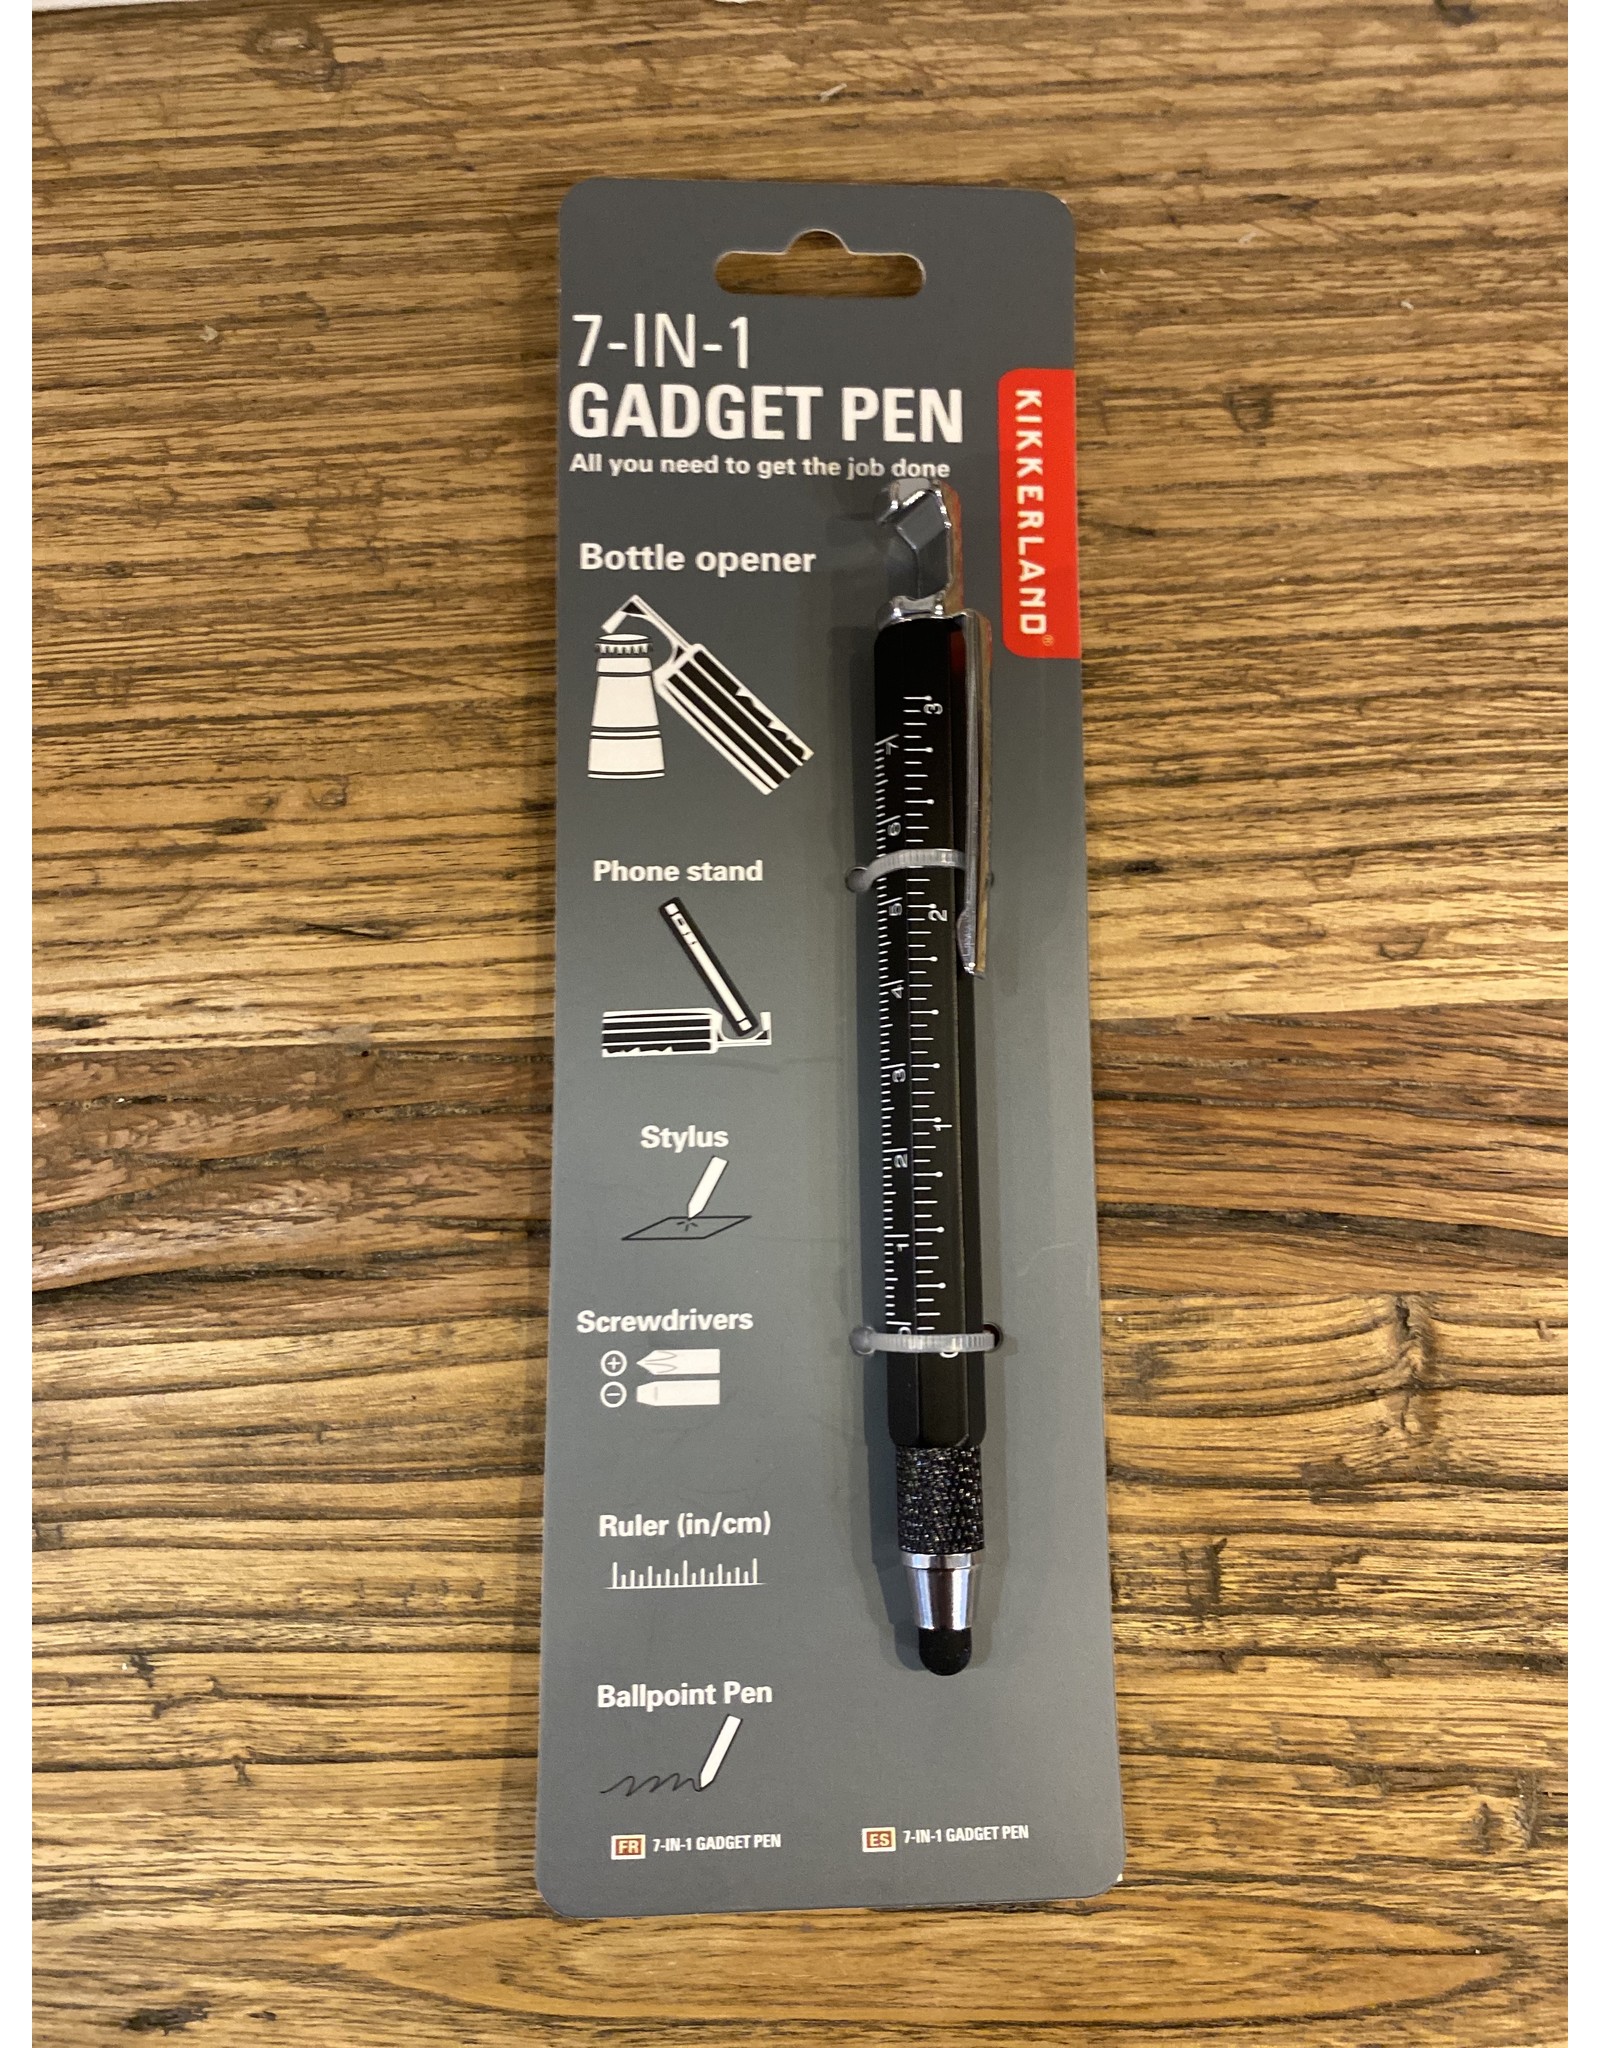 7-In-1 Gadget Pen